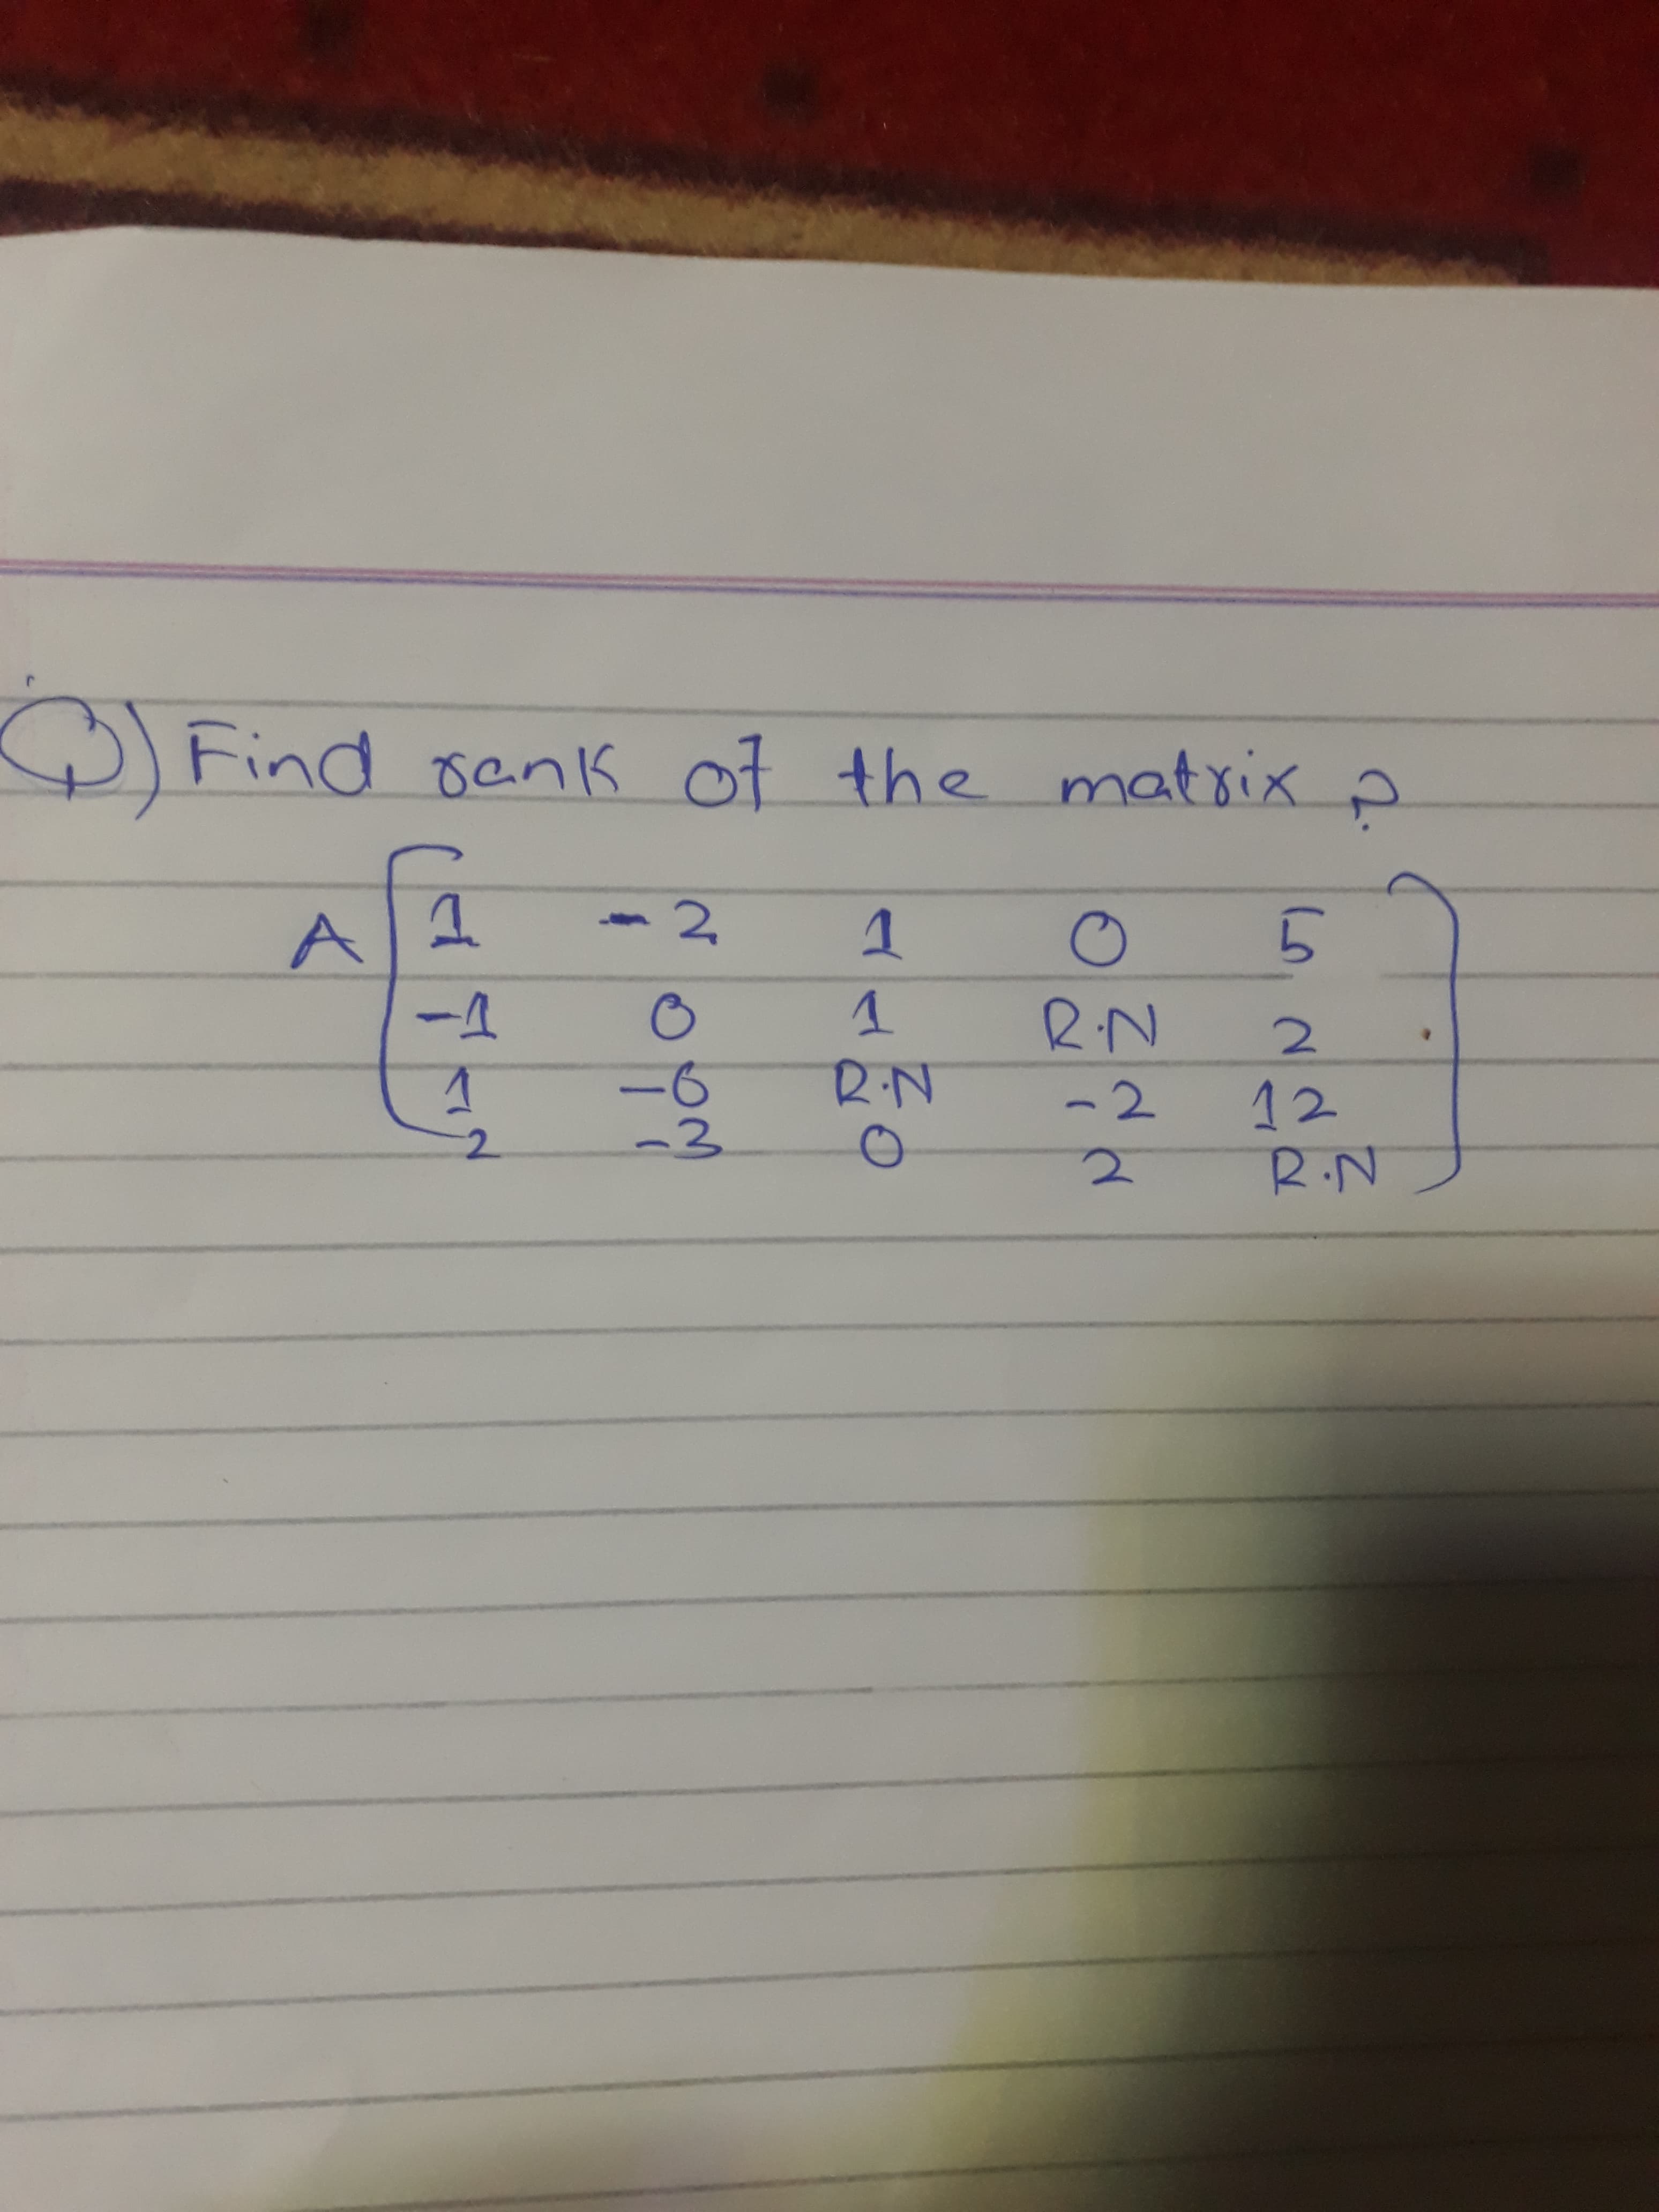 N.N
て1
て
てー
-3
こ
1.
そー
) Find oenk of the matrix p
